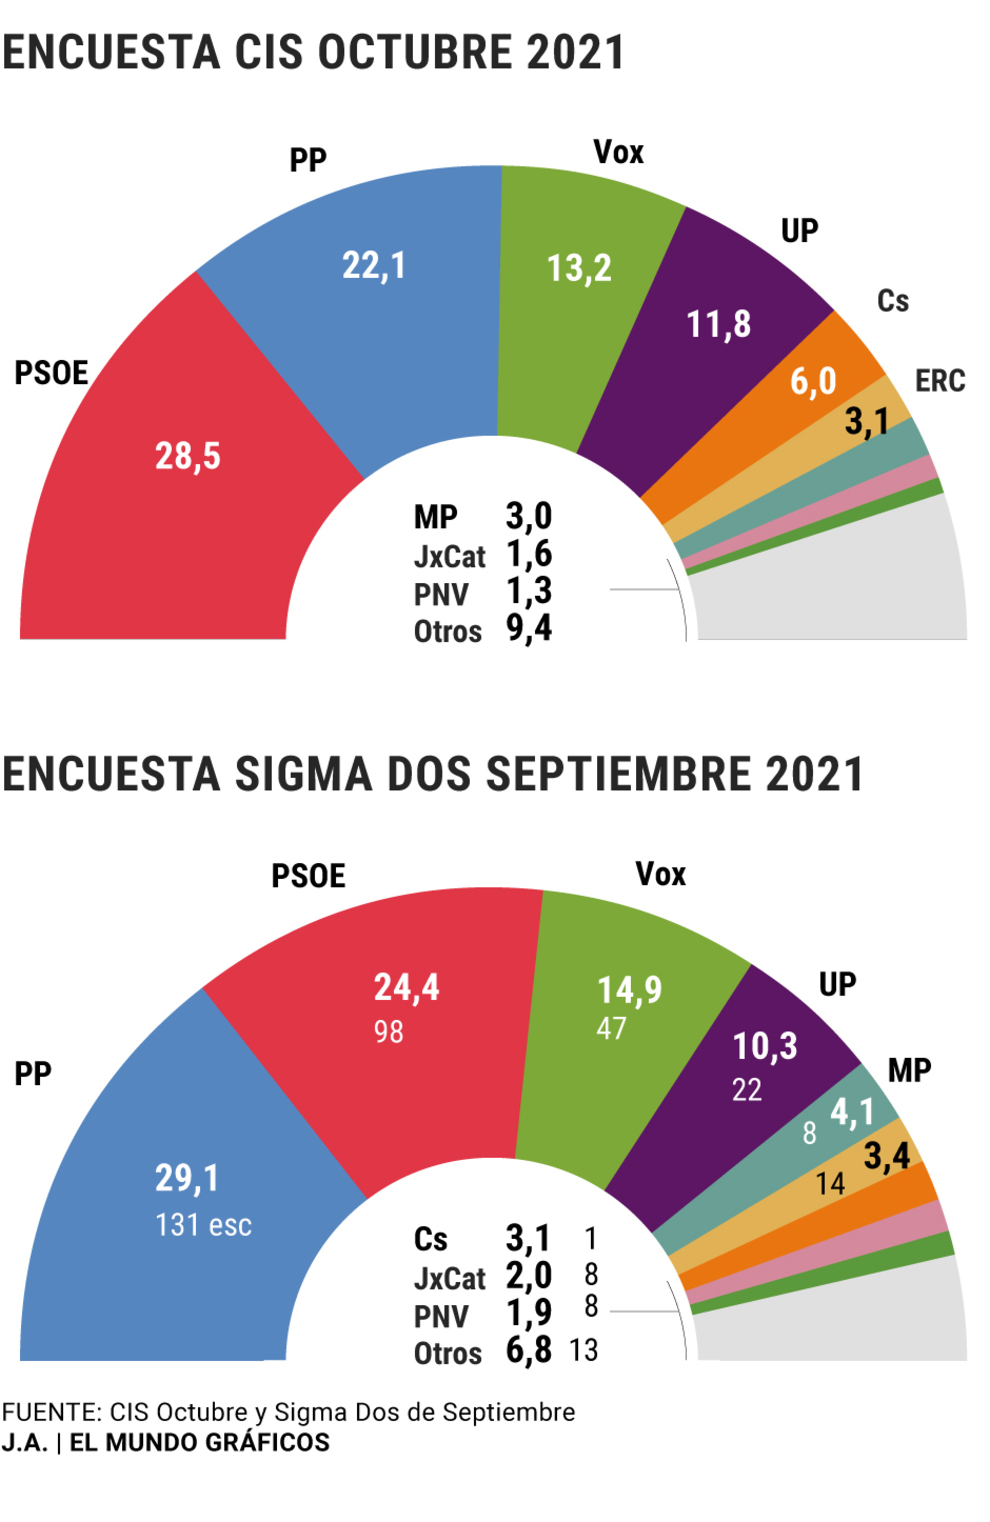 El PP crece, se acerca al PSOE y se aleja de Vox tras su convenci